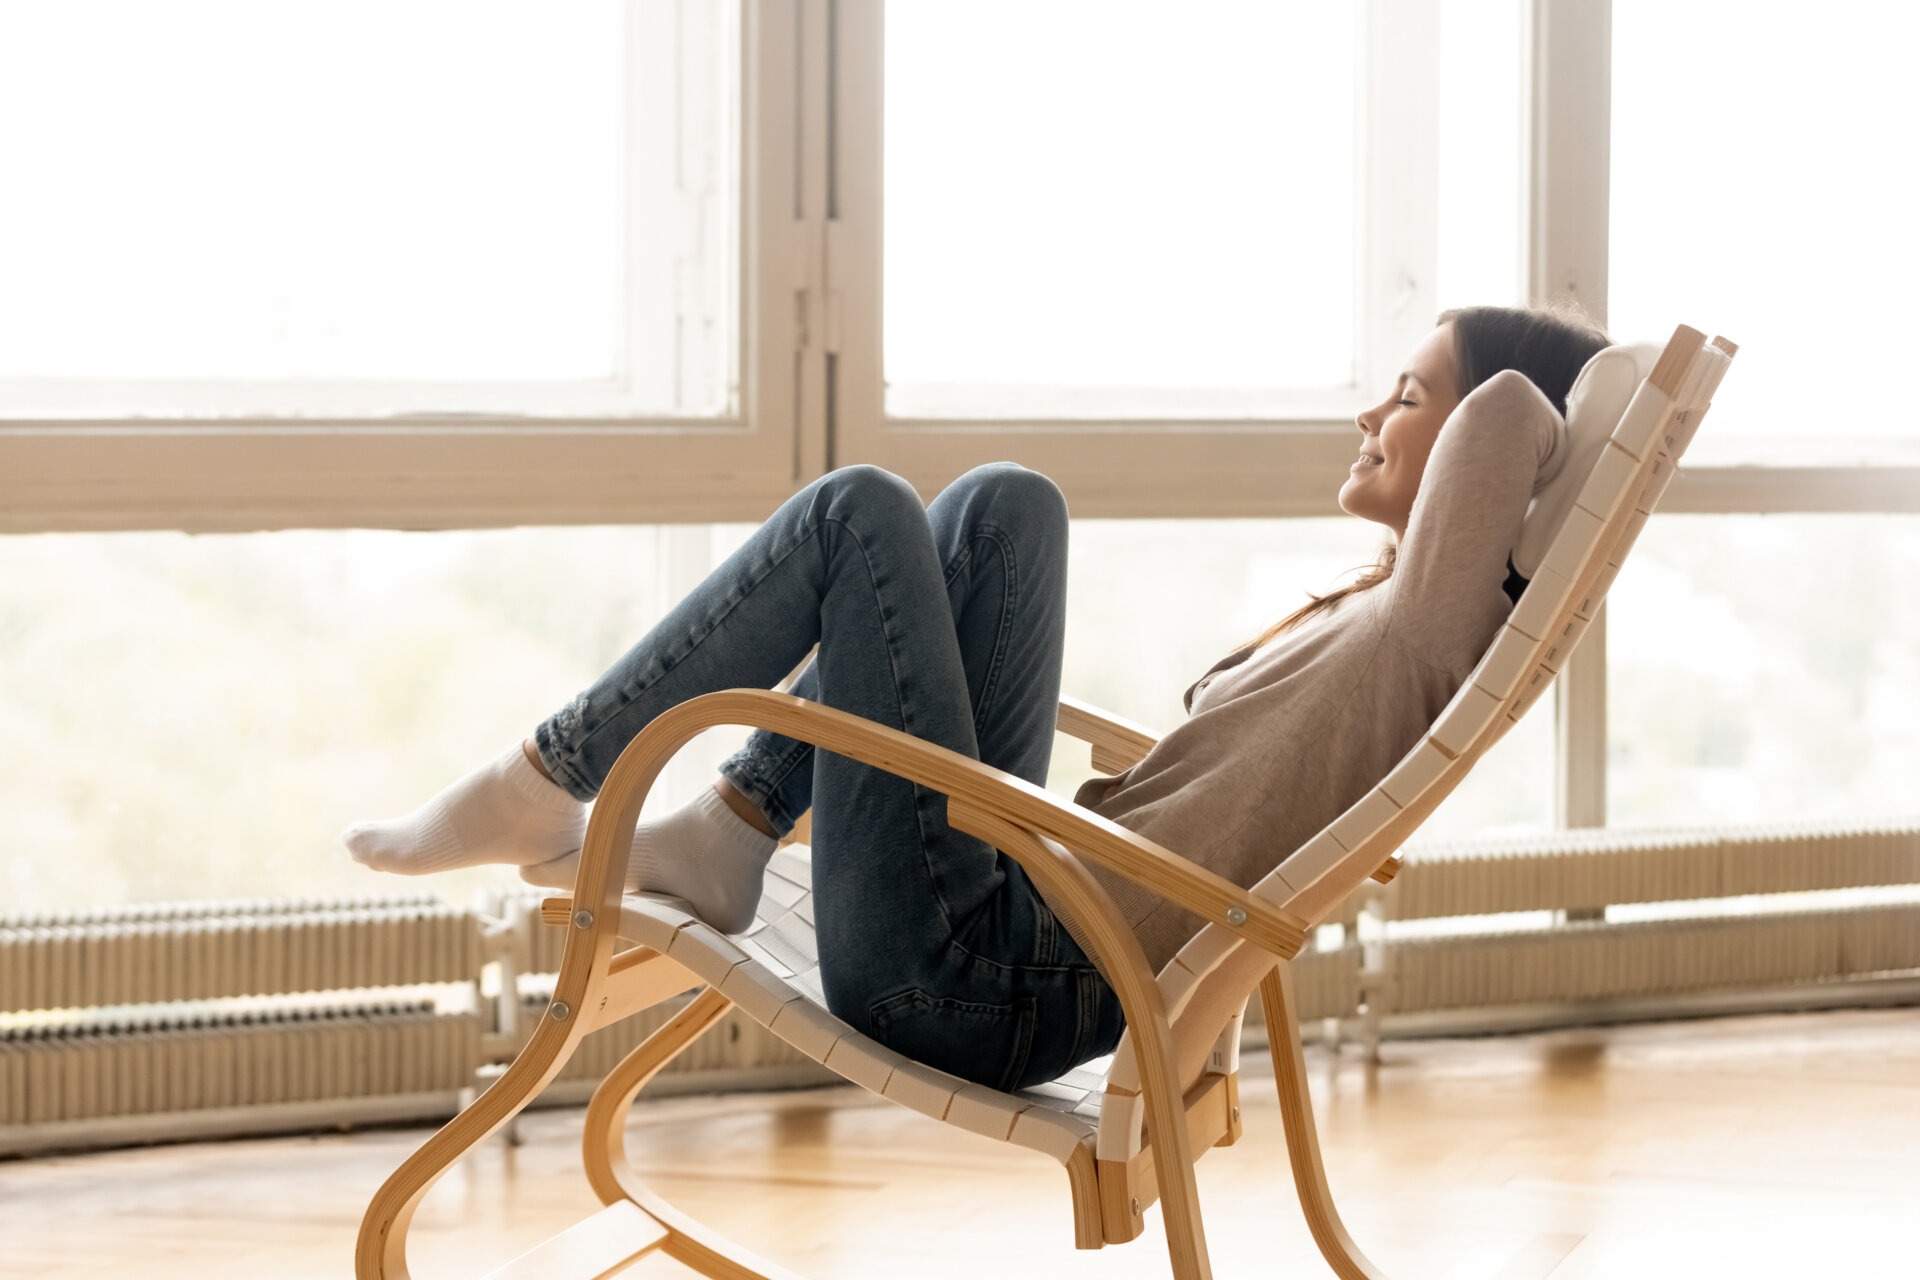 Μια γυναίκα που κάθεται σε μια κουνιστή καρέκλα και φαίνεται να χαλαρώνει και να είναι ξεκούραστη κι ανέμελη.